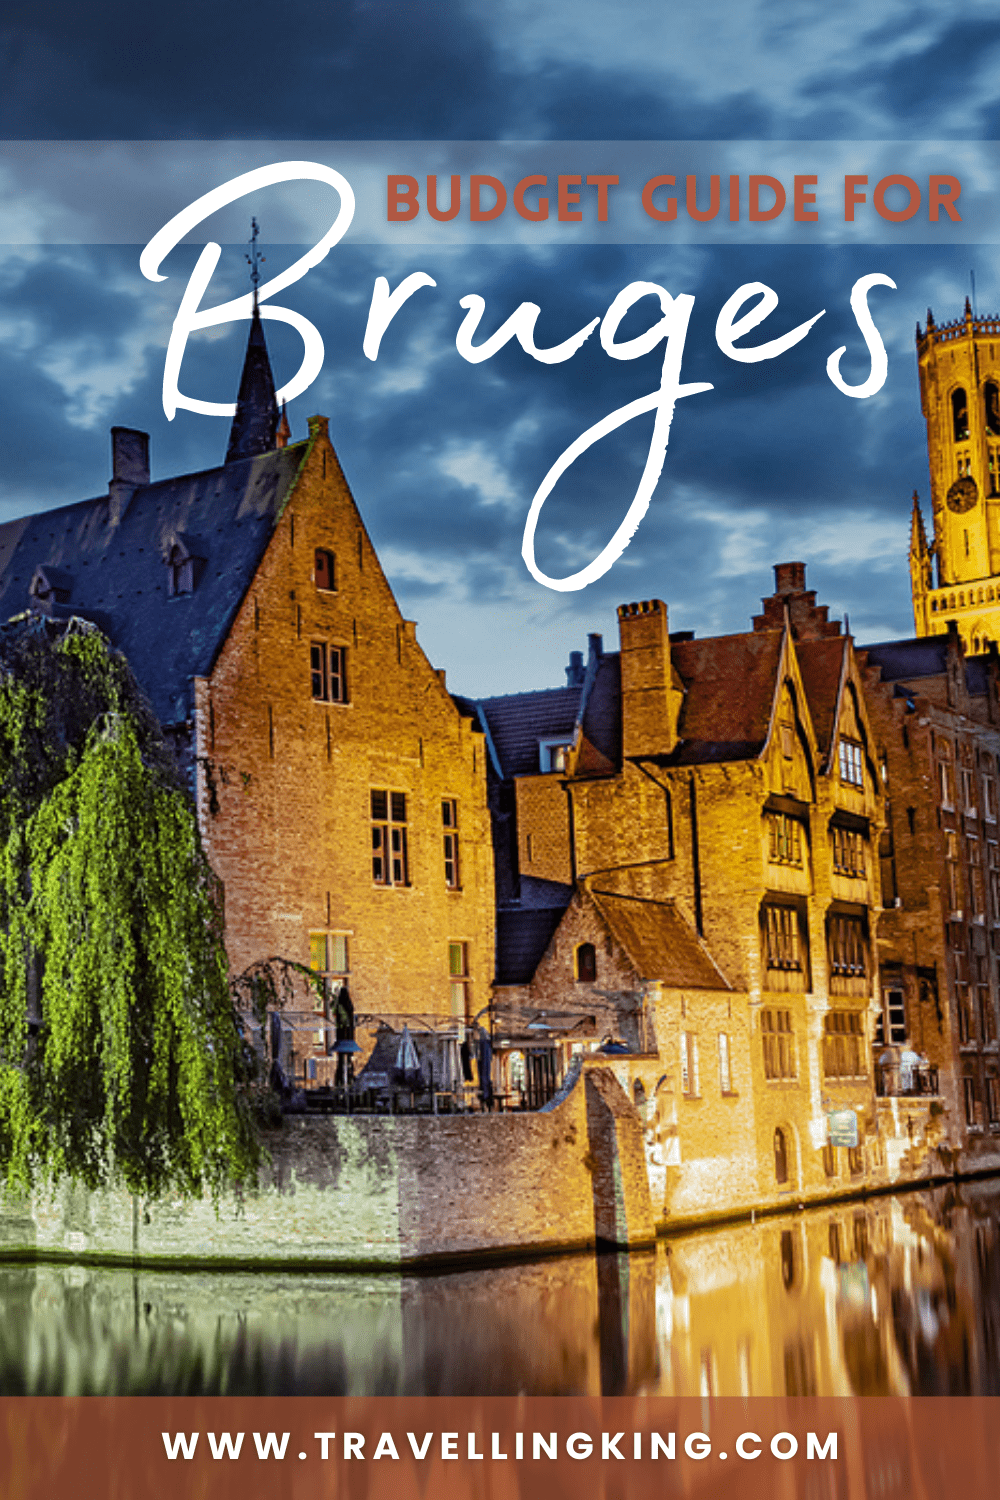 Budget guide for Bruges